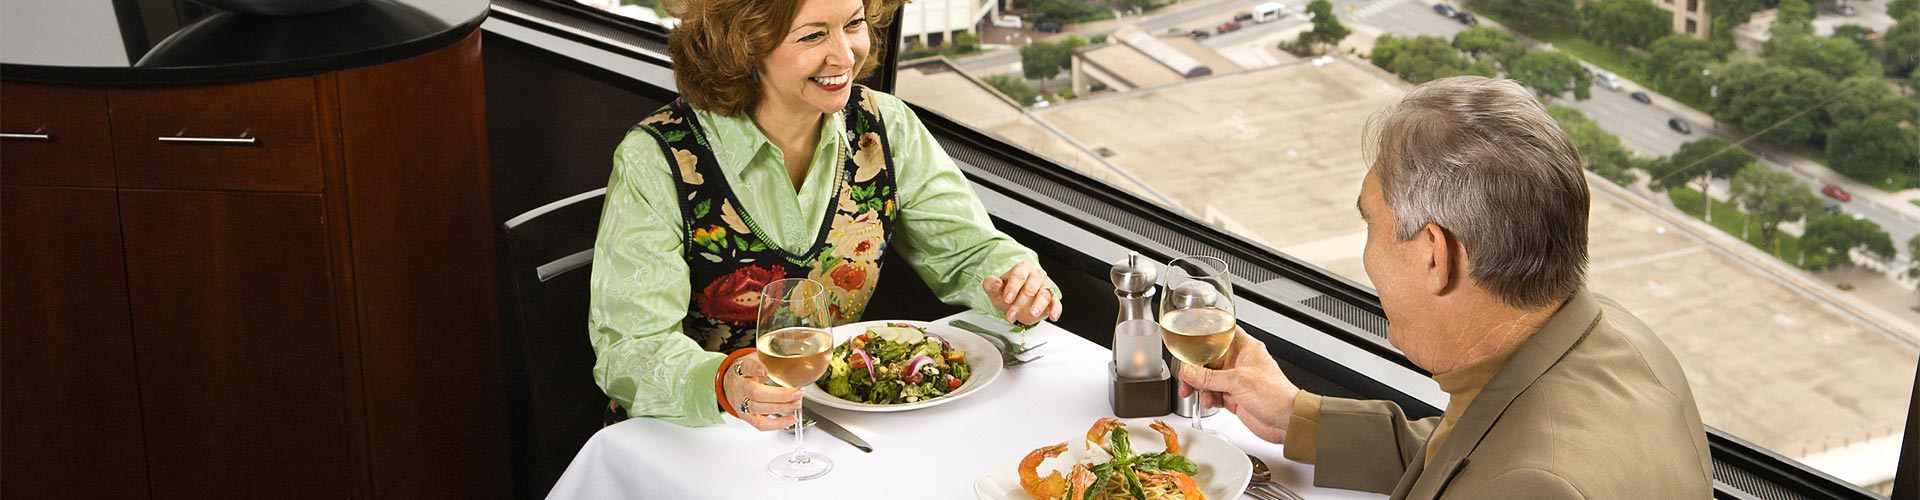 ¿Dónde comer ensaladas en Planes?